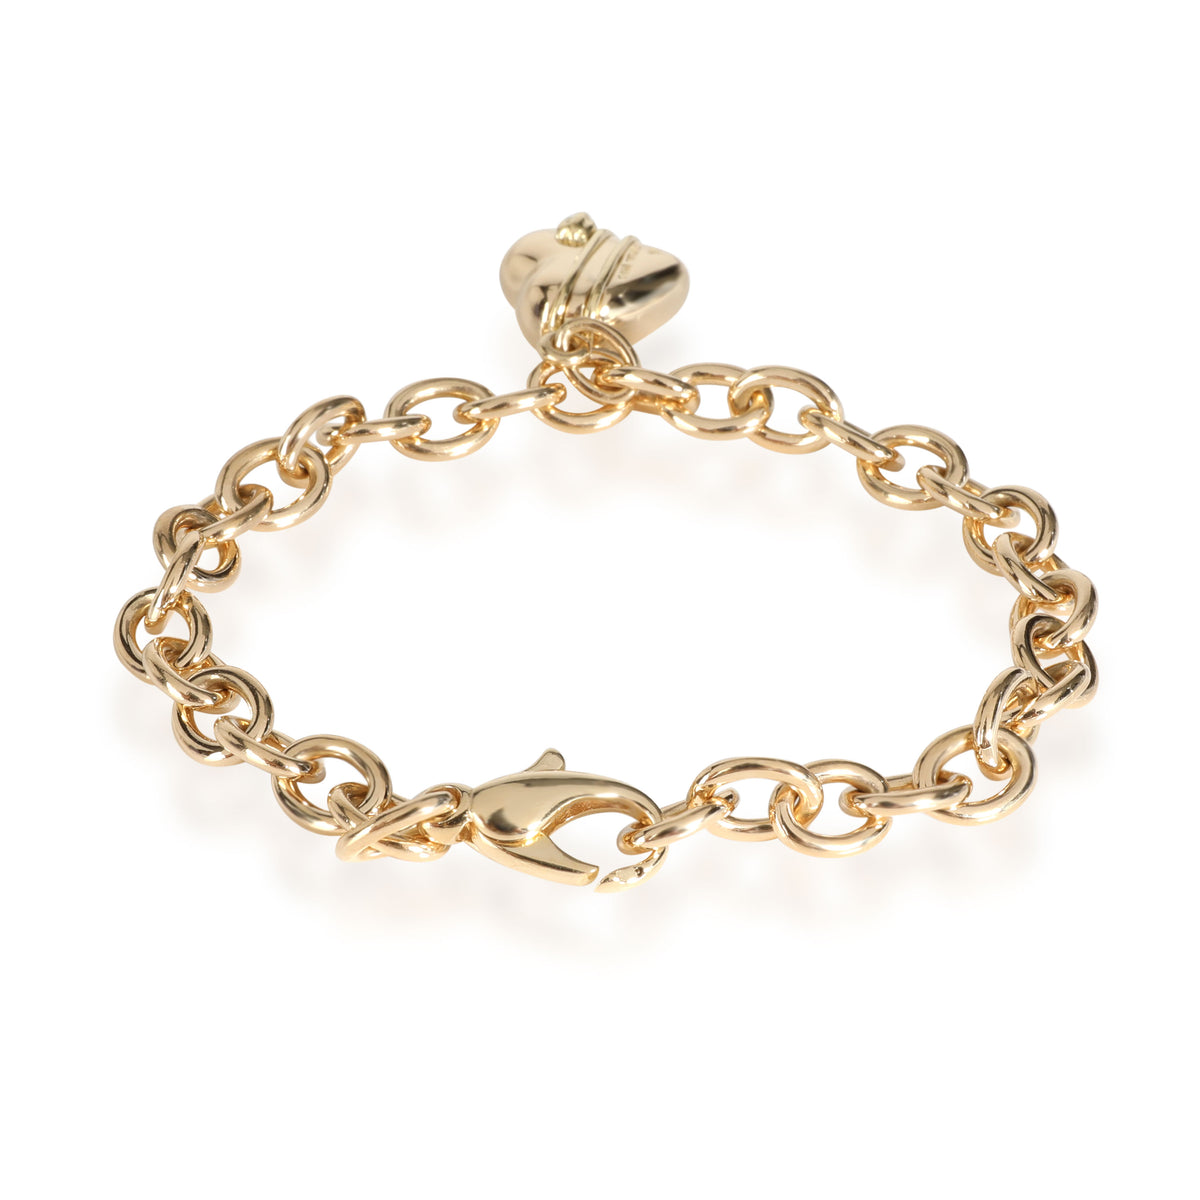 Tiffany & Co. Cupid Heart Charm Bracelet in 18k Yellow Gold